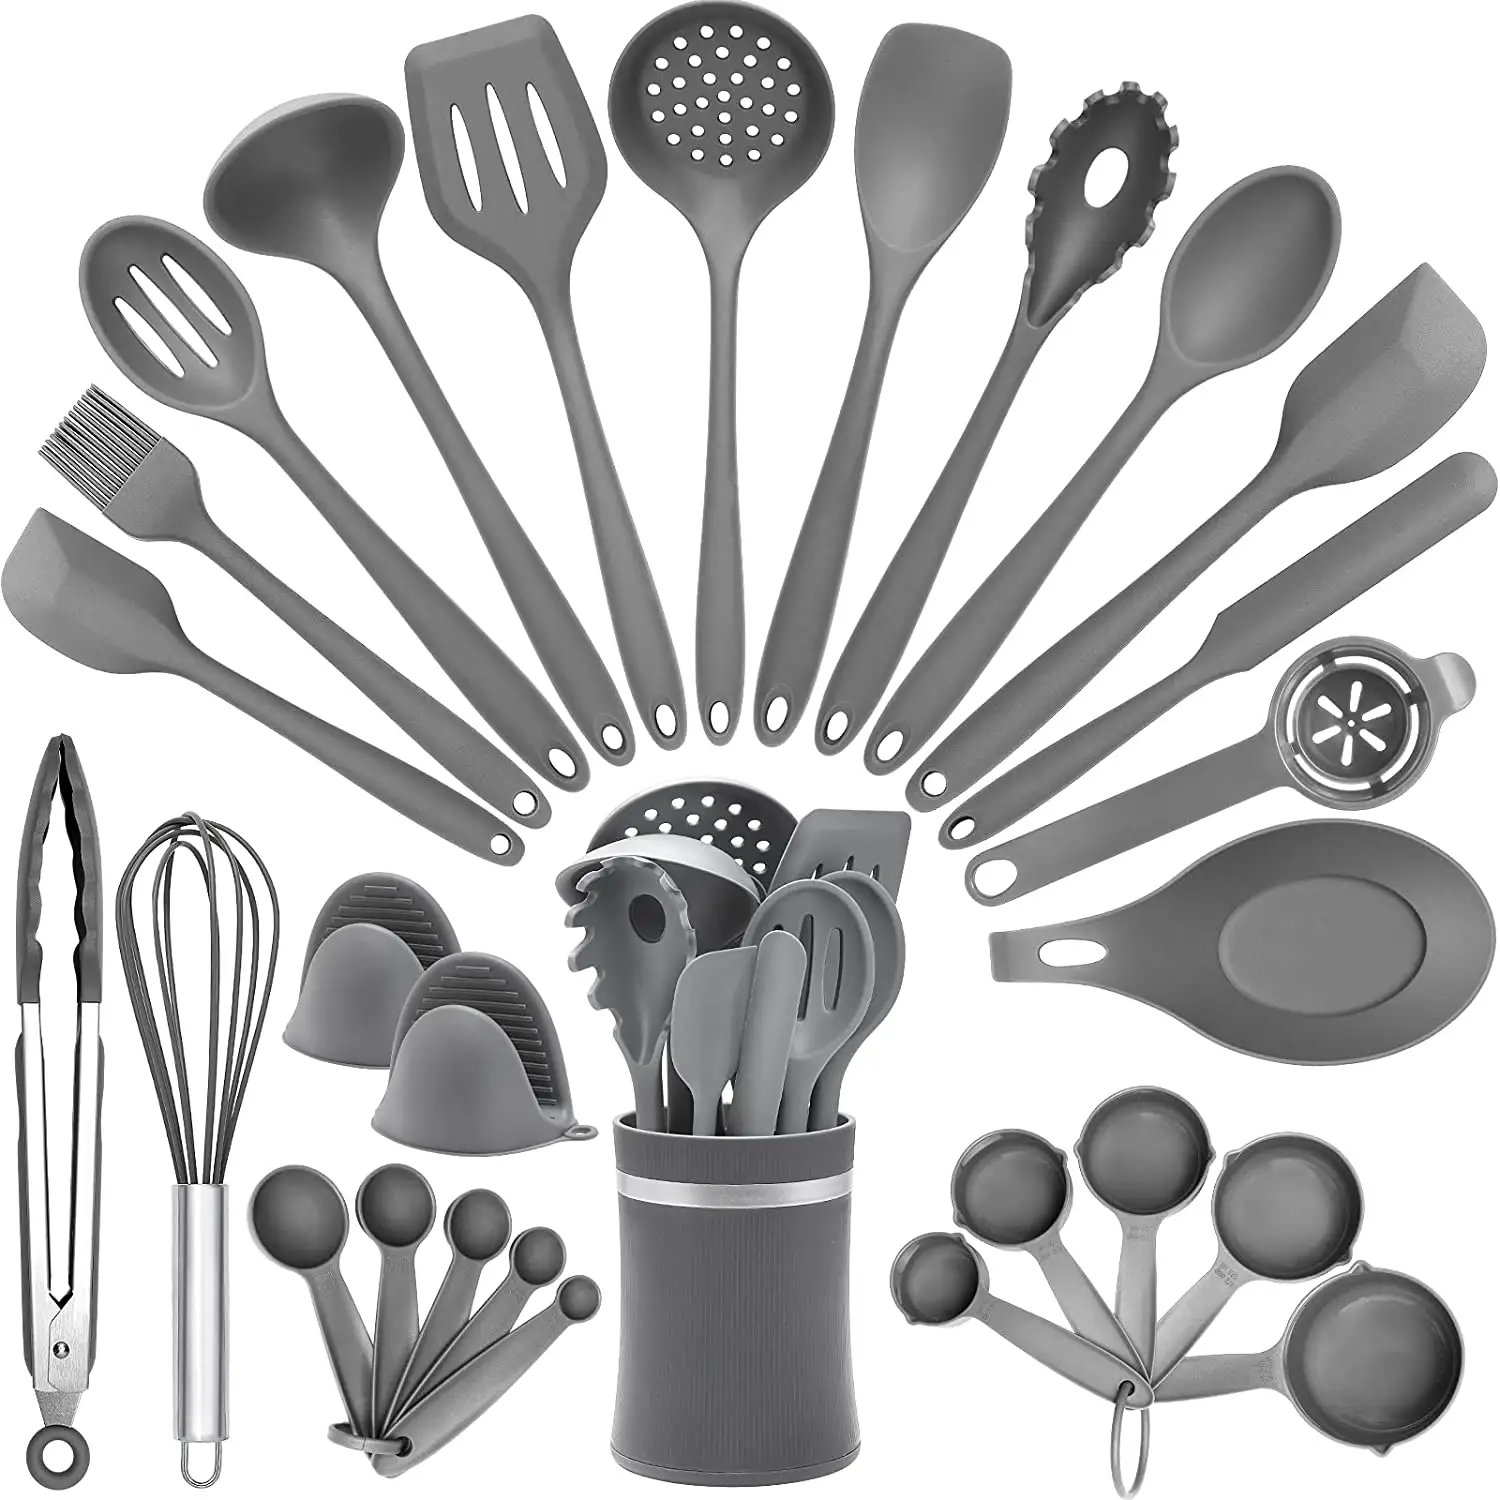 Utensílios de cozinha luxuosos, alta qualidade, acessórios de cozinha, ferramentas de cozinha, em massa, conjunto de utensílios de cozinha